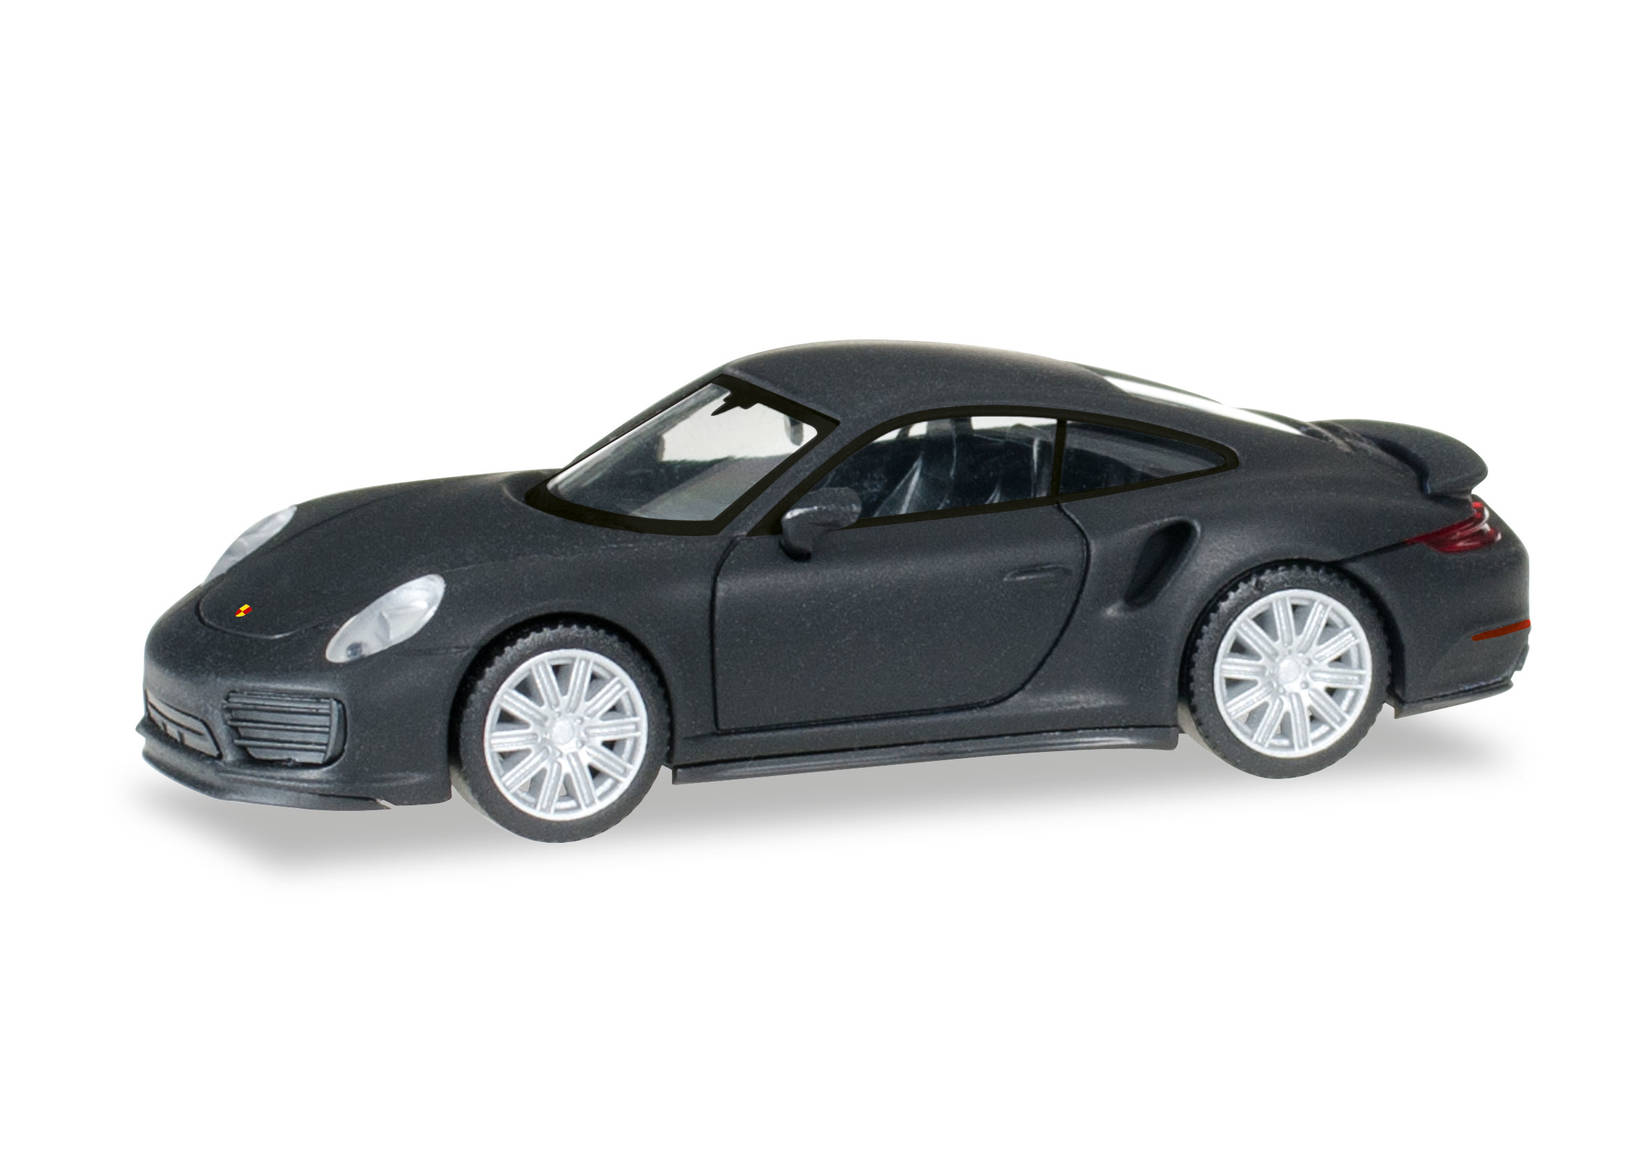 Porsche 911 Turbo, mattschwarz mit Chromfelgen